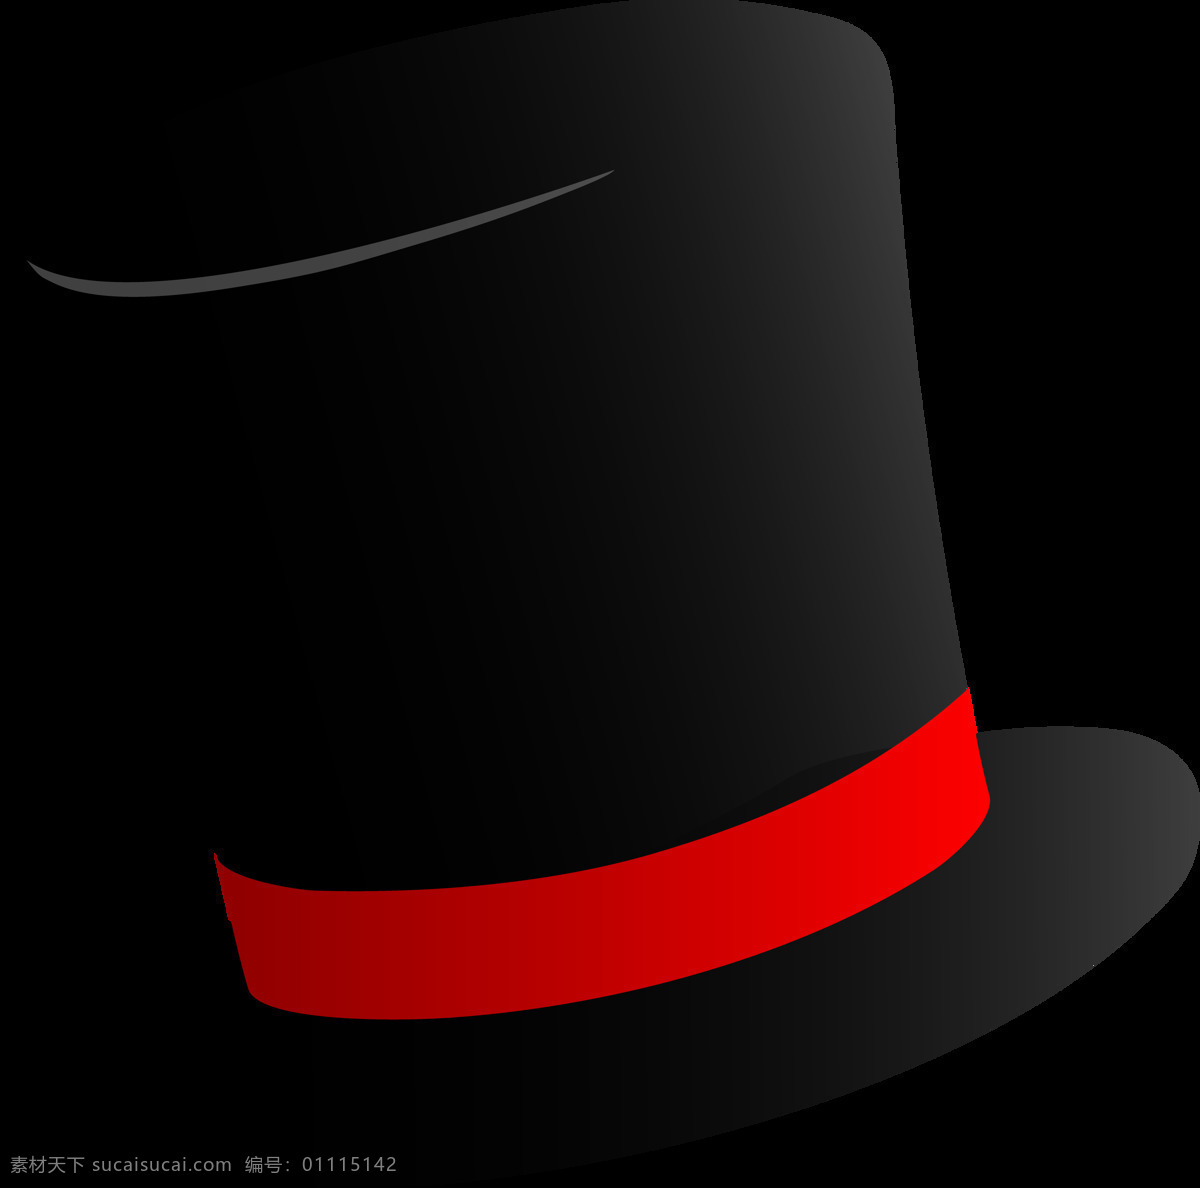 手绘 黑色 魔术 帽 免 抠 透明 图 层 魔术师帽子 魔术师帽 魔术帽子 魔术帽简笔画 手绘魔术帽 黑色魔术帽 魔术帽素材 漂亮魔术帽 魔术道具 魔术帽子集合 魔术帽子大全